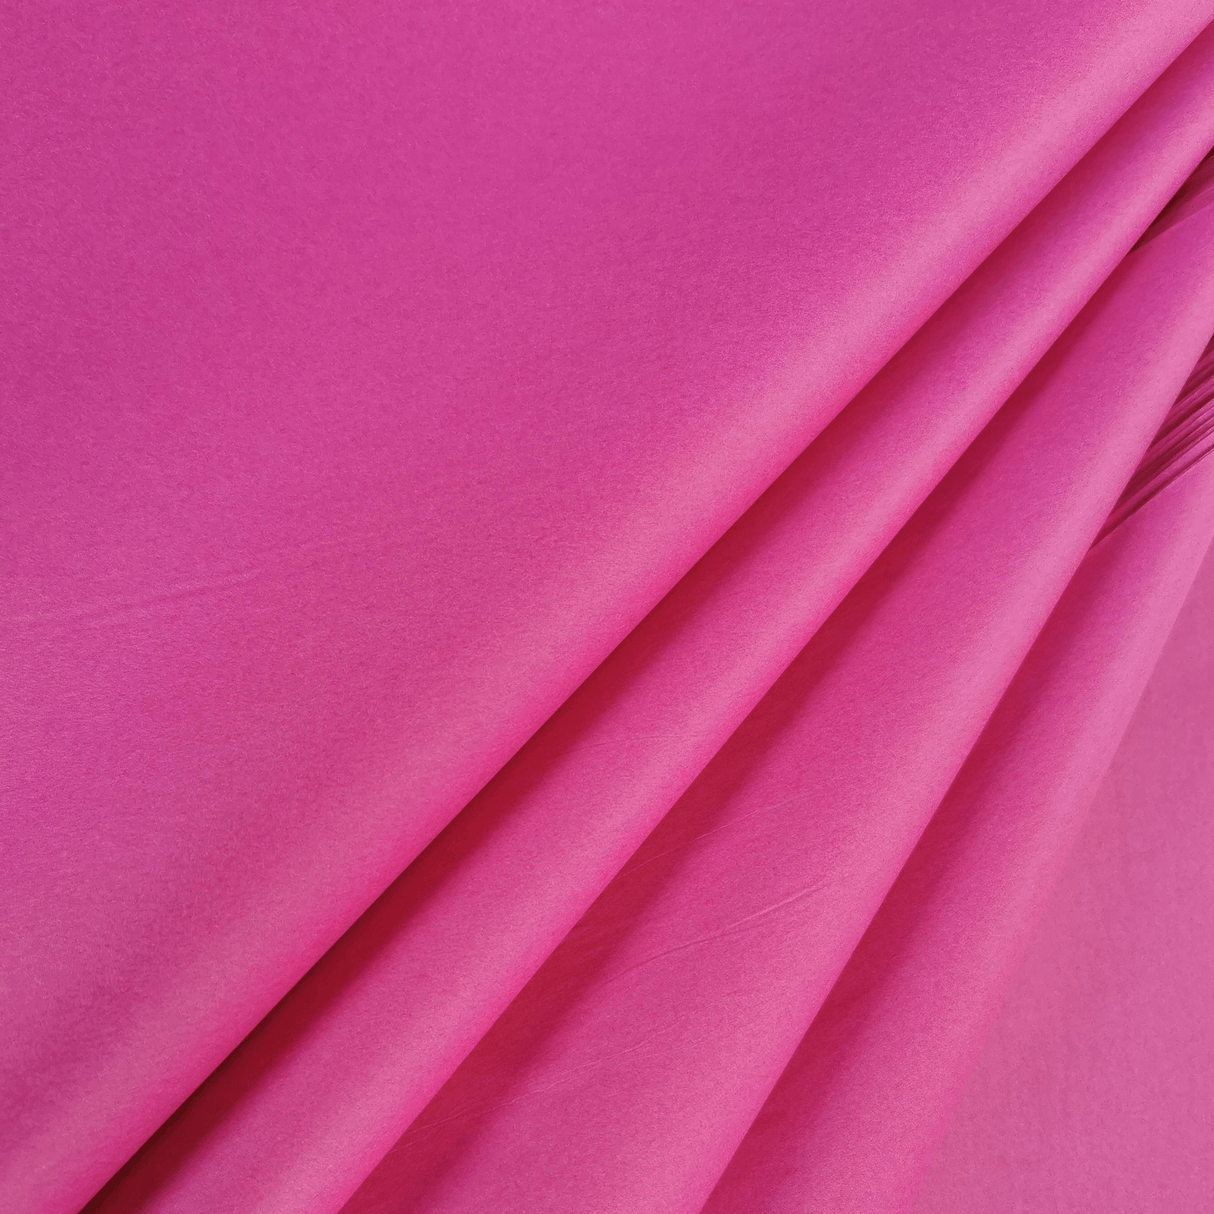 Fuchsia Tissue Folds 2